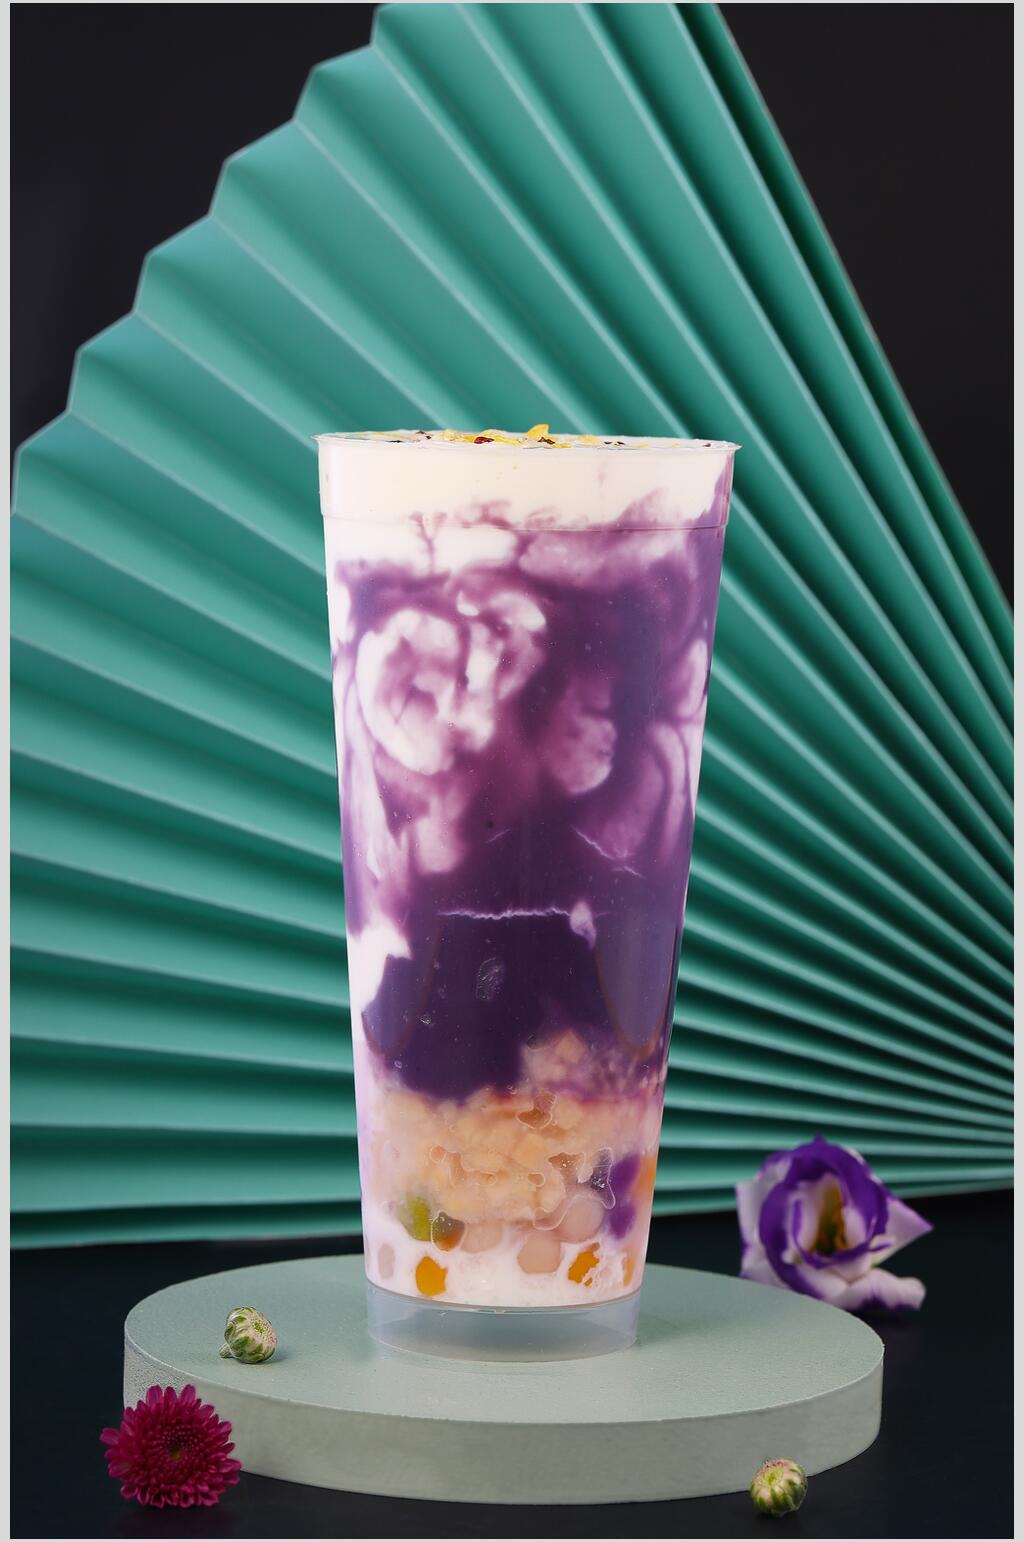 紫薯果汁奶茶高清图片立即下载紫薯奶茶图片立即下载紫薯奶茶食物摄影